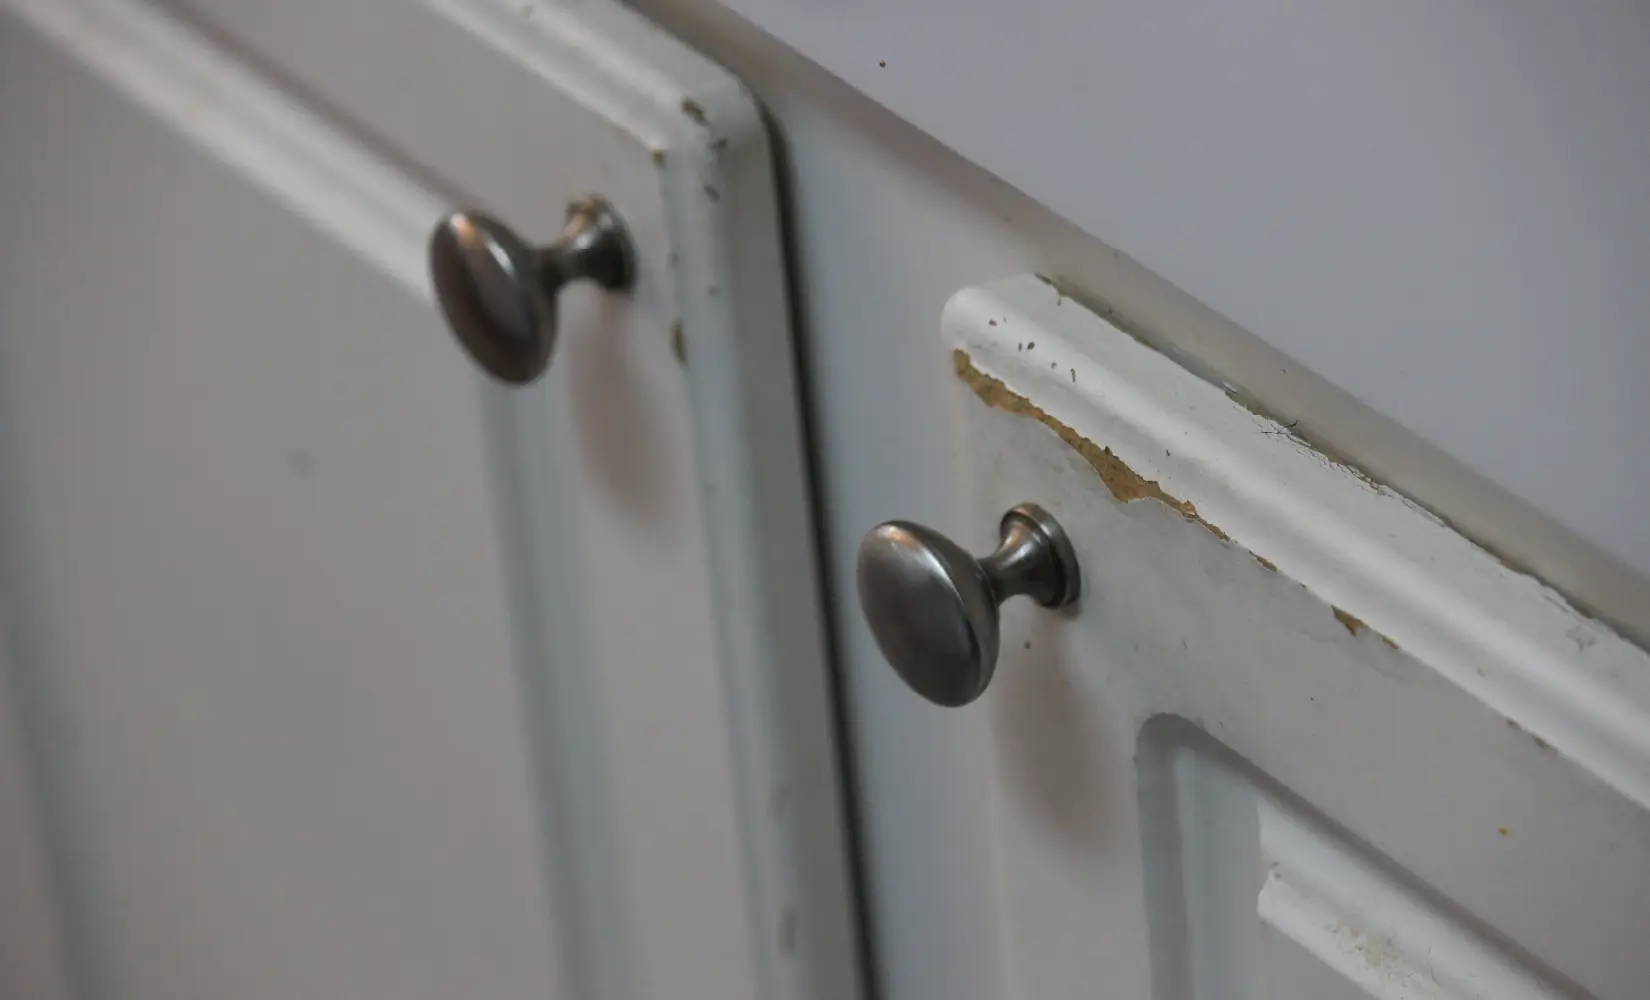 Older, damaged white cabinet doors.